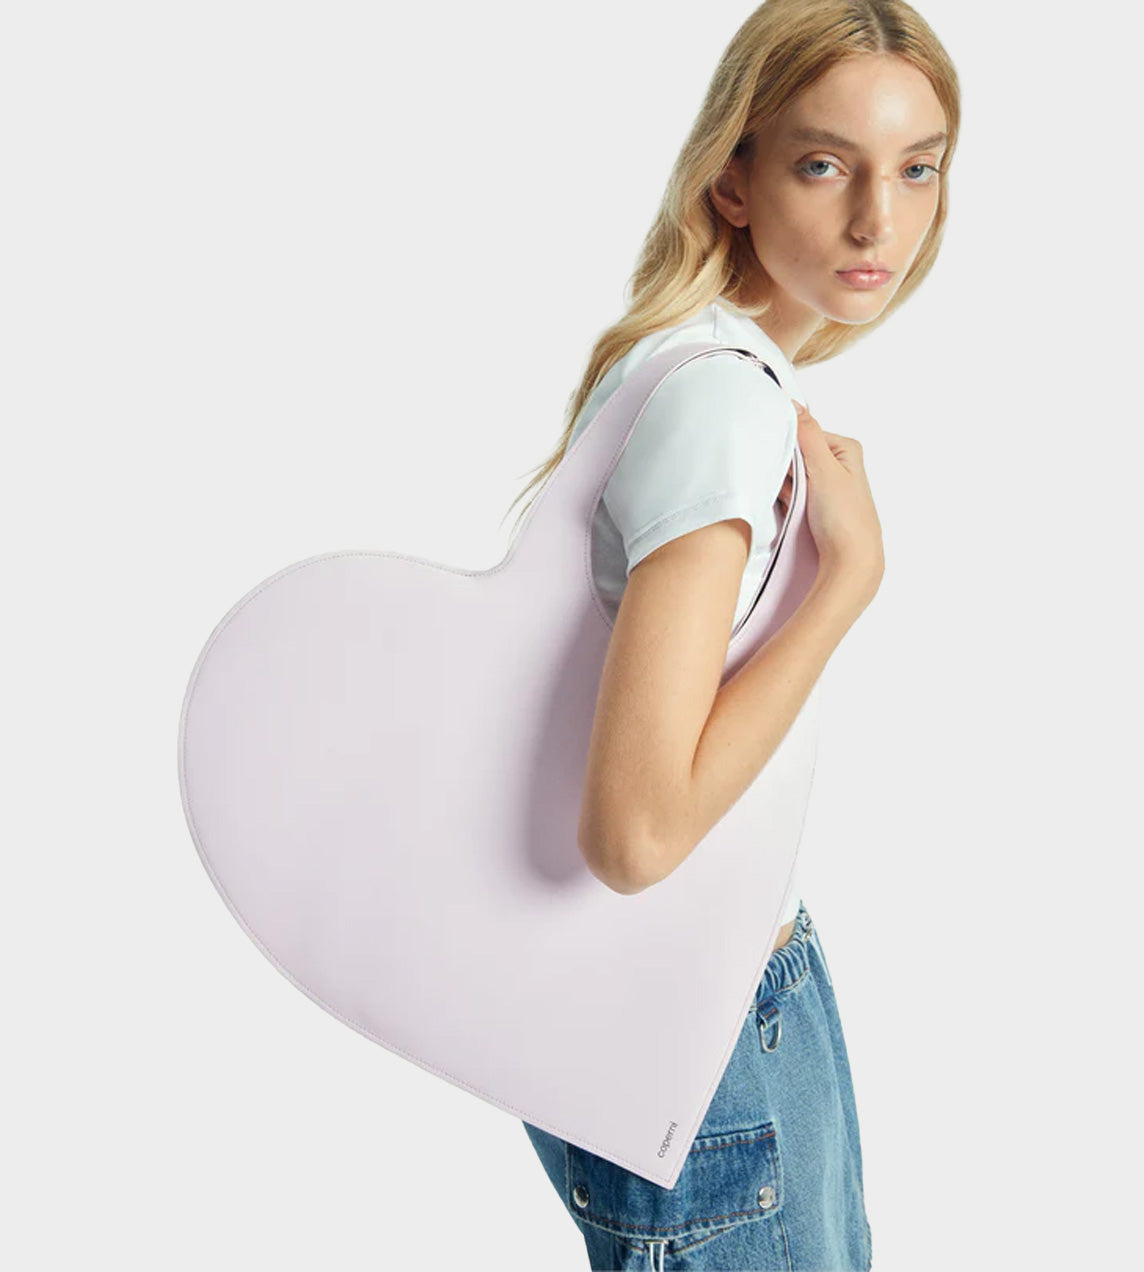 Coperni - Heart Tote Bag Light Pink